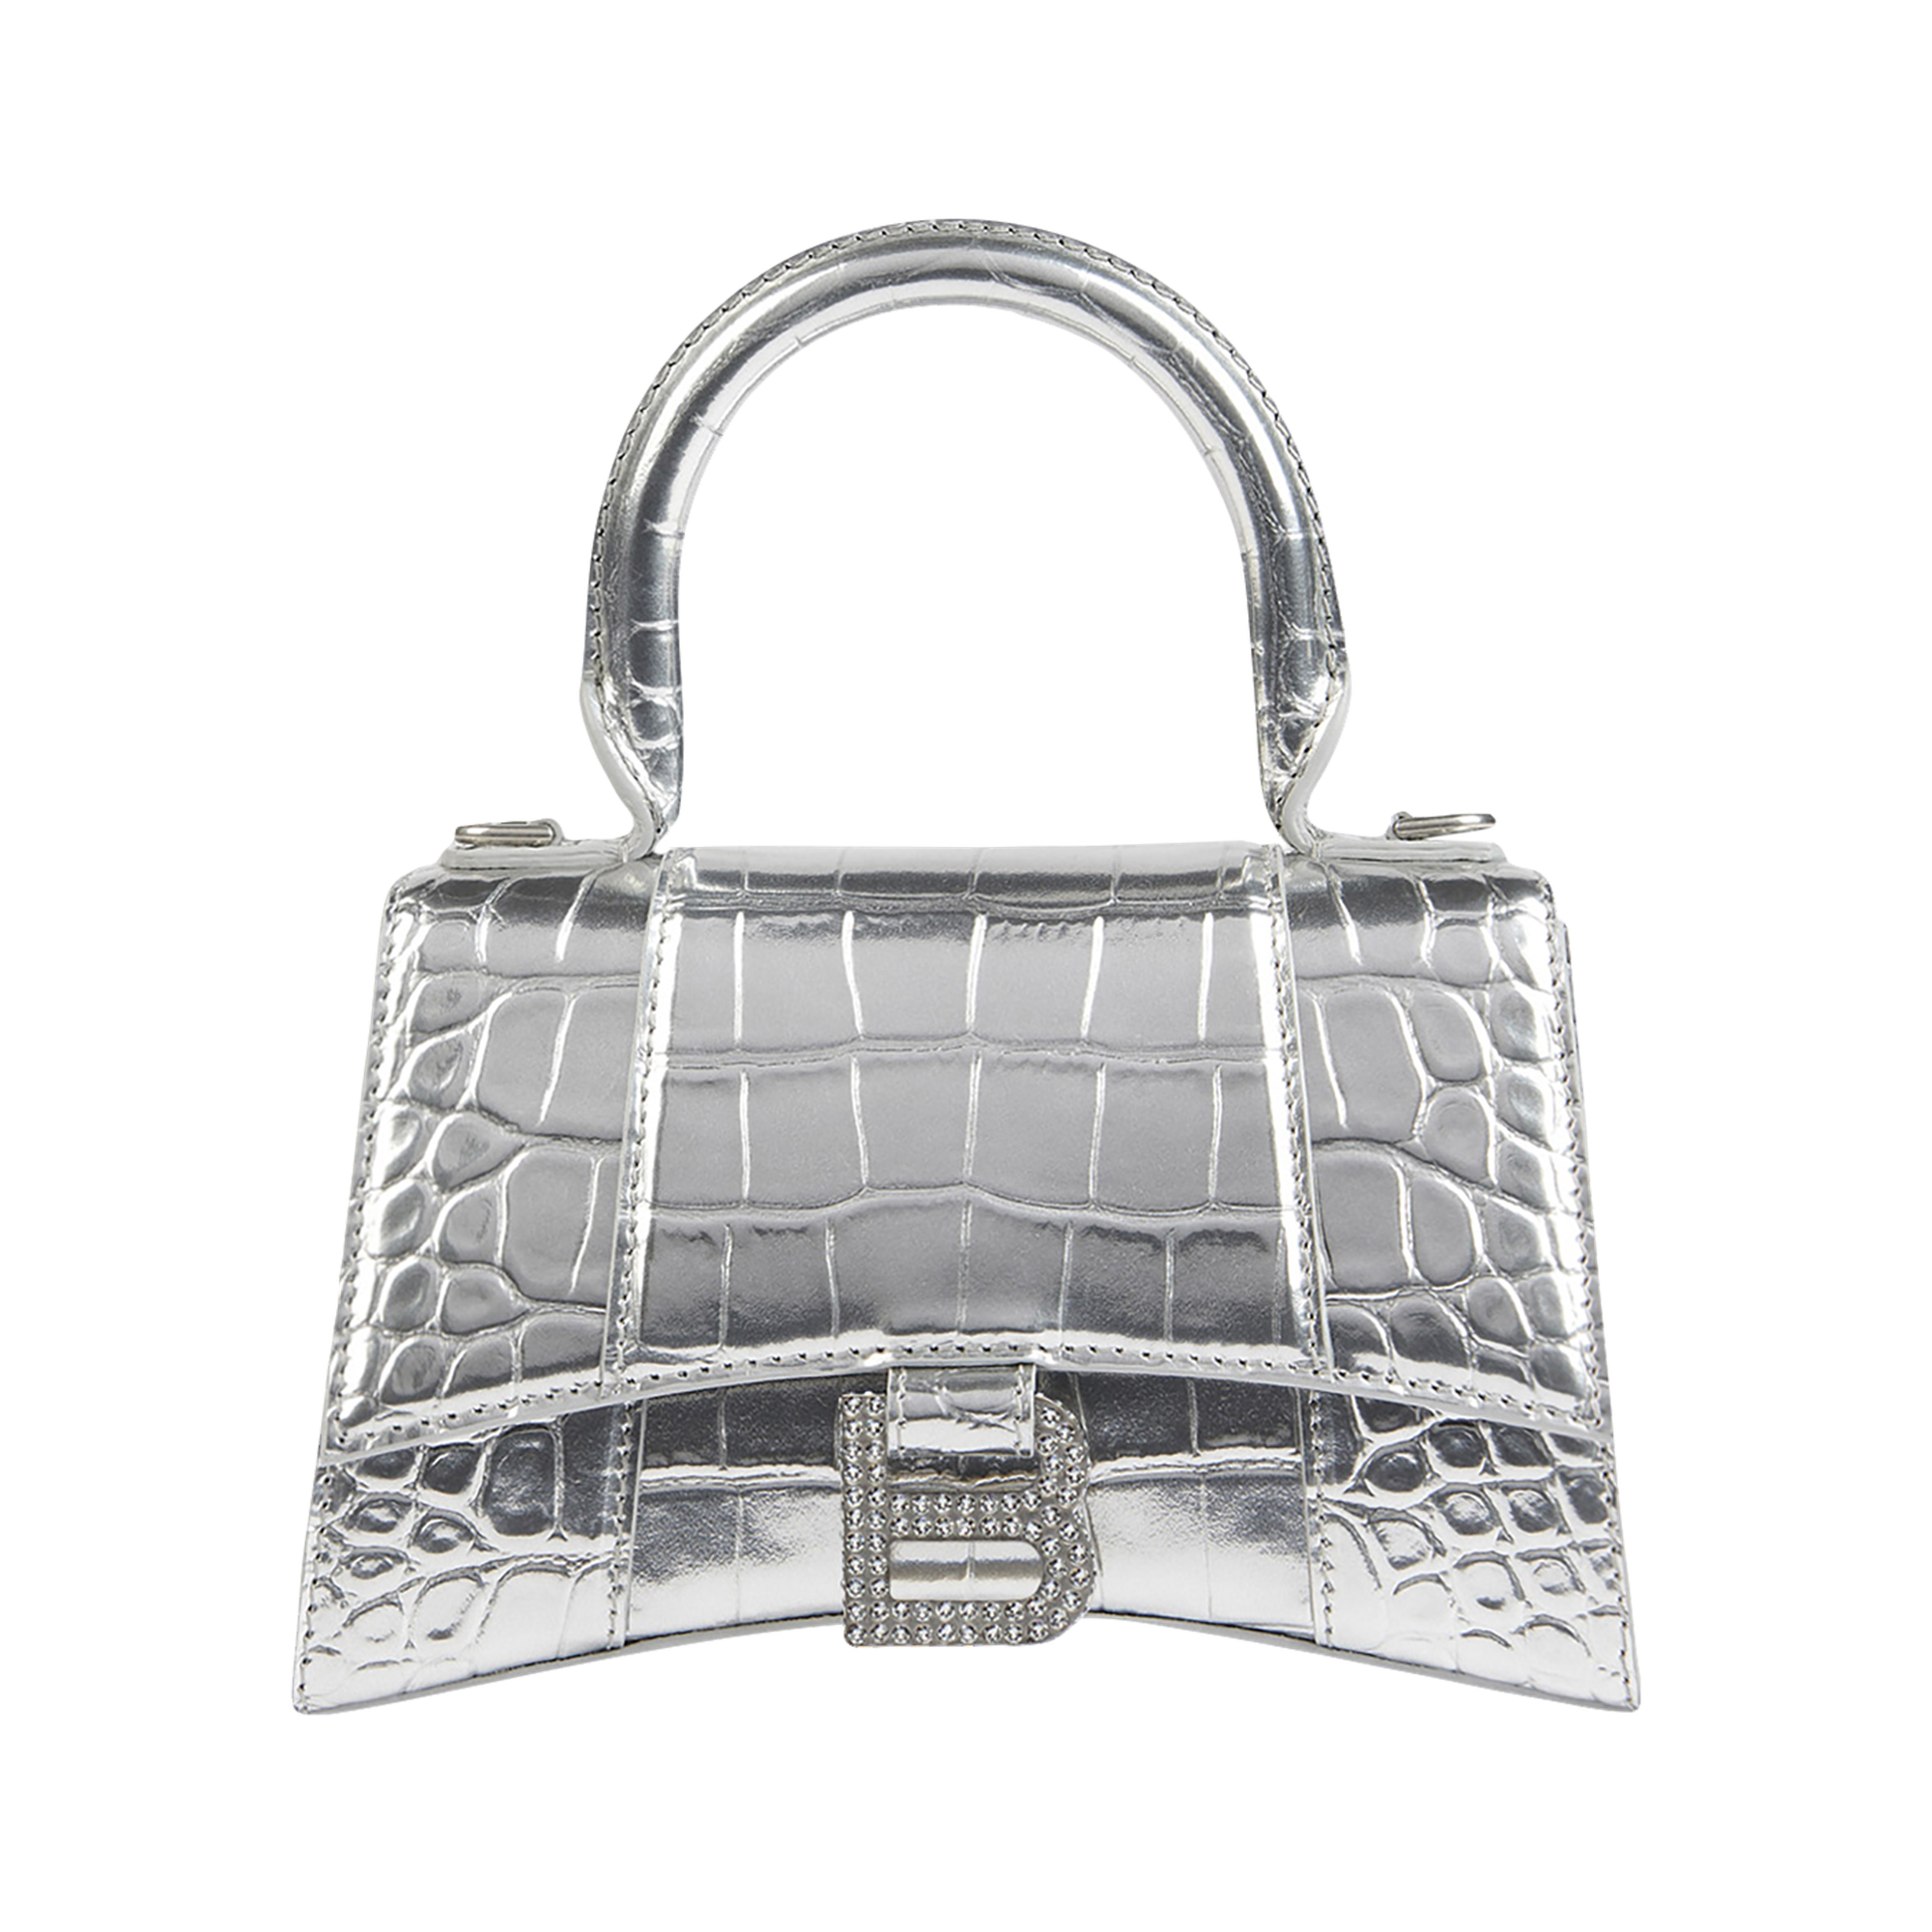 Balenciaga Hourglass XS Handbag Metallized Crocodile Embossed With Rhinestones